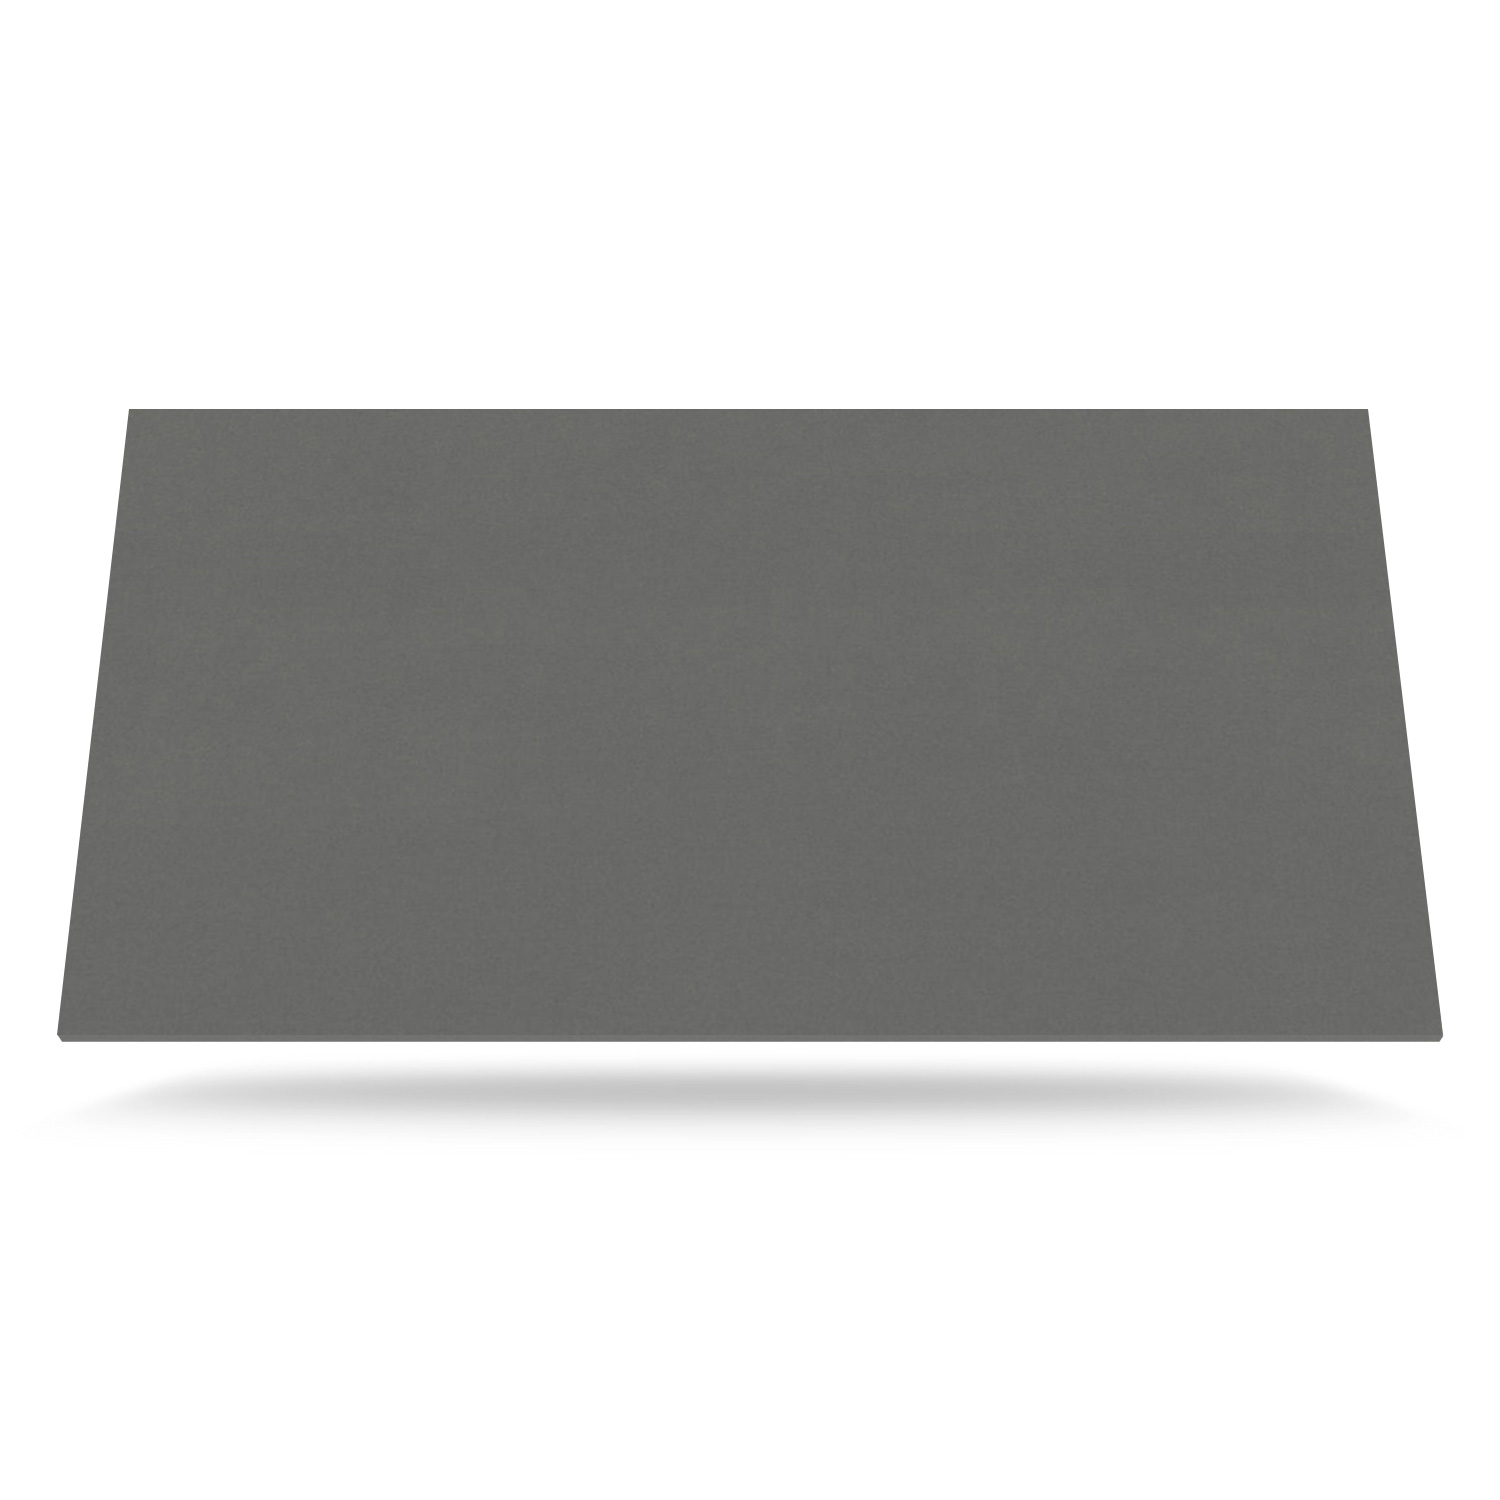 Mellemgrå Tekstureret Stof- Laminat bordplade på mål - 2134